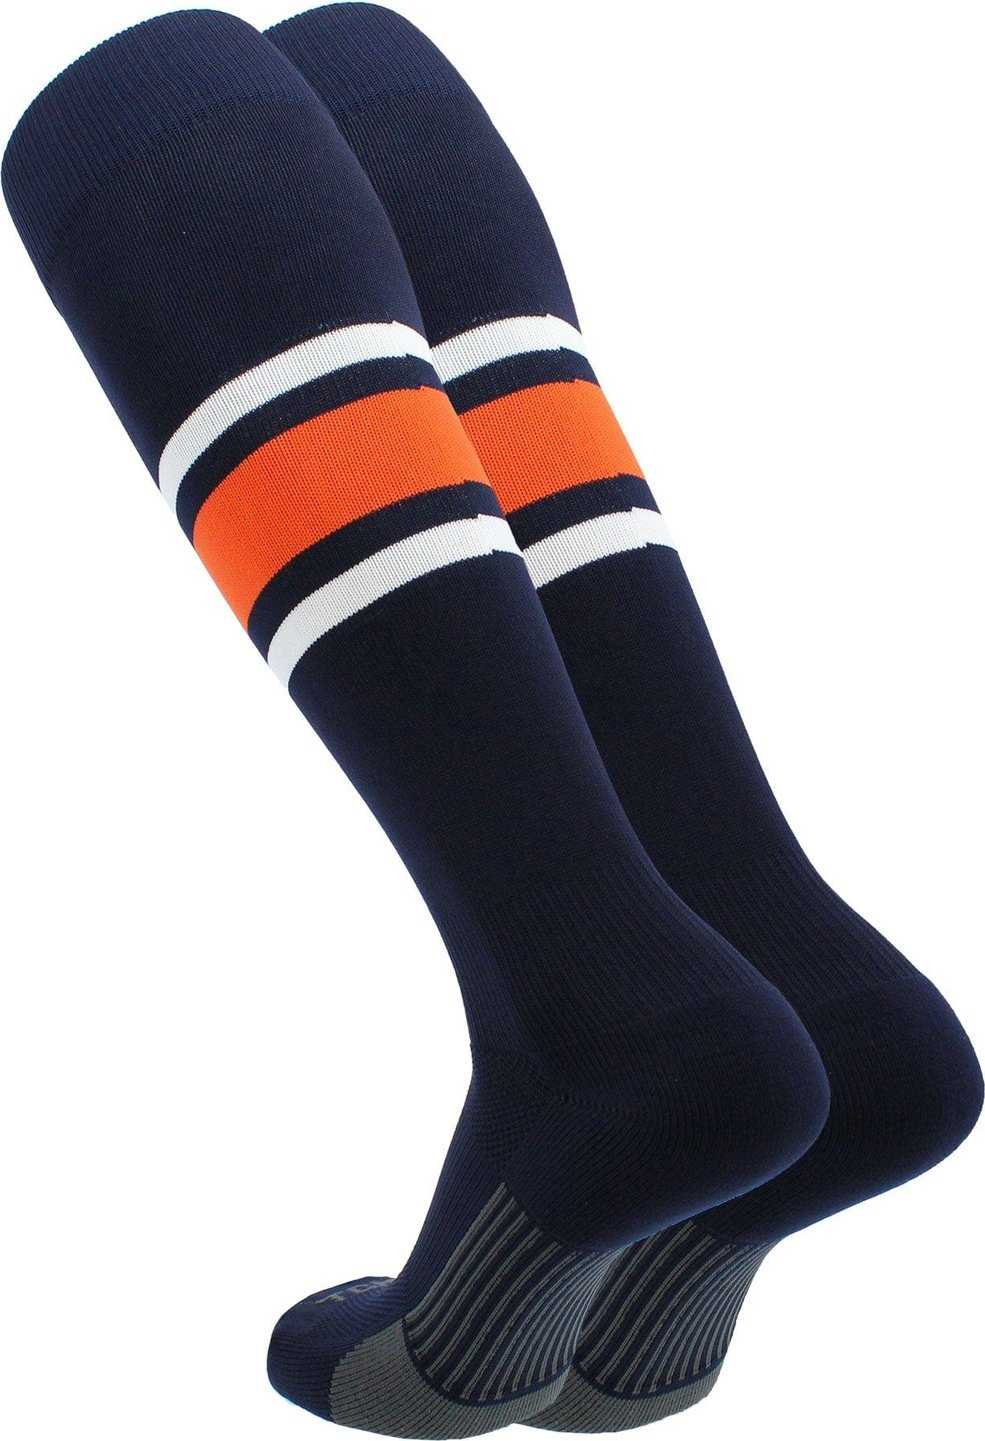 TCK Dugout Knee High Socks - Navy White Orange